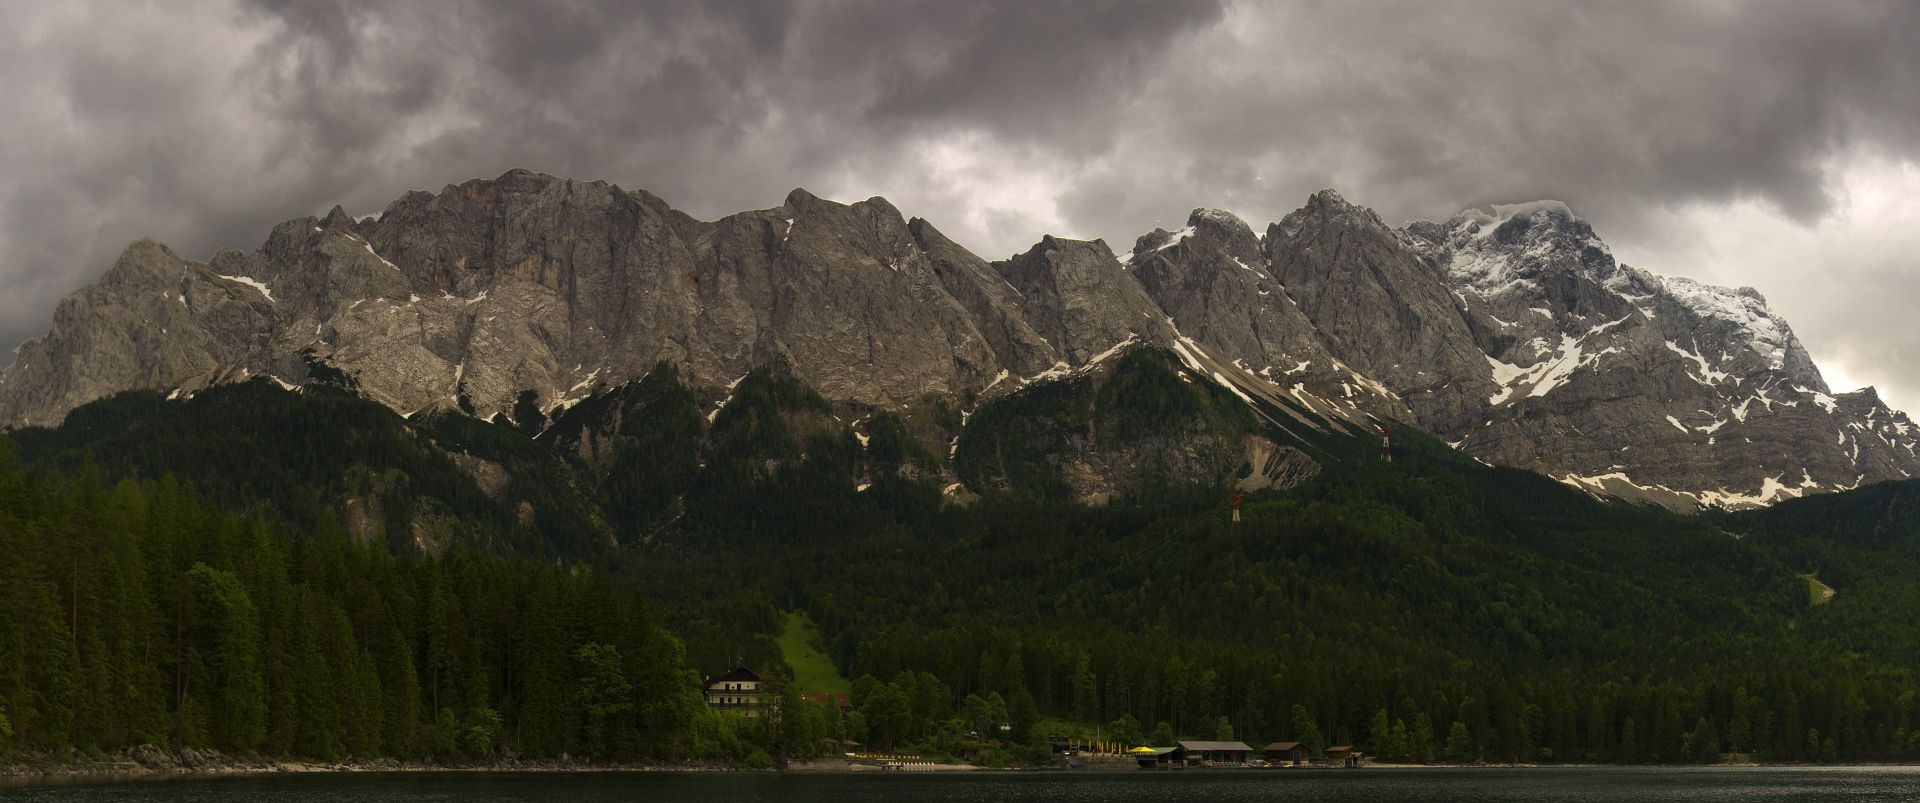 Masyw Zugspitze widziany znad jeziora Eibsee